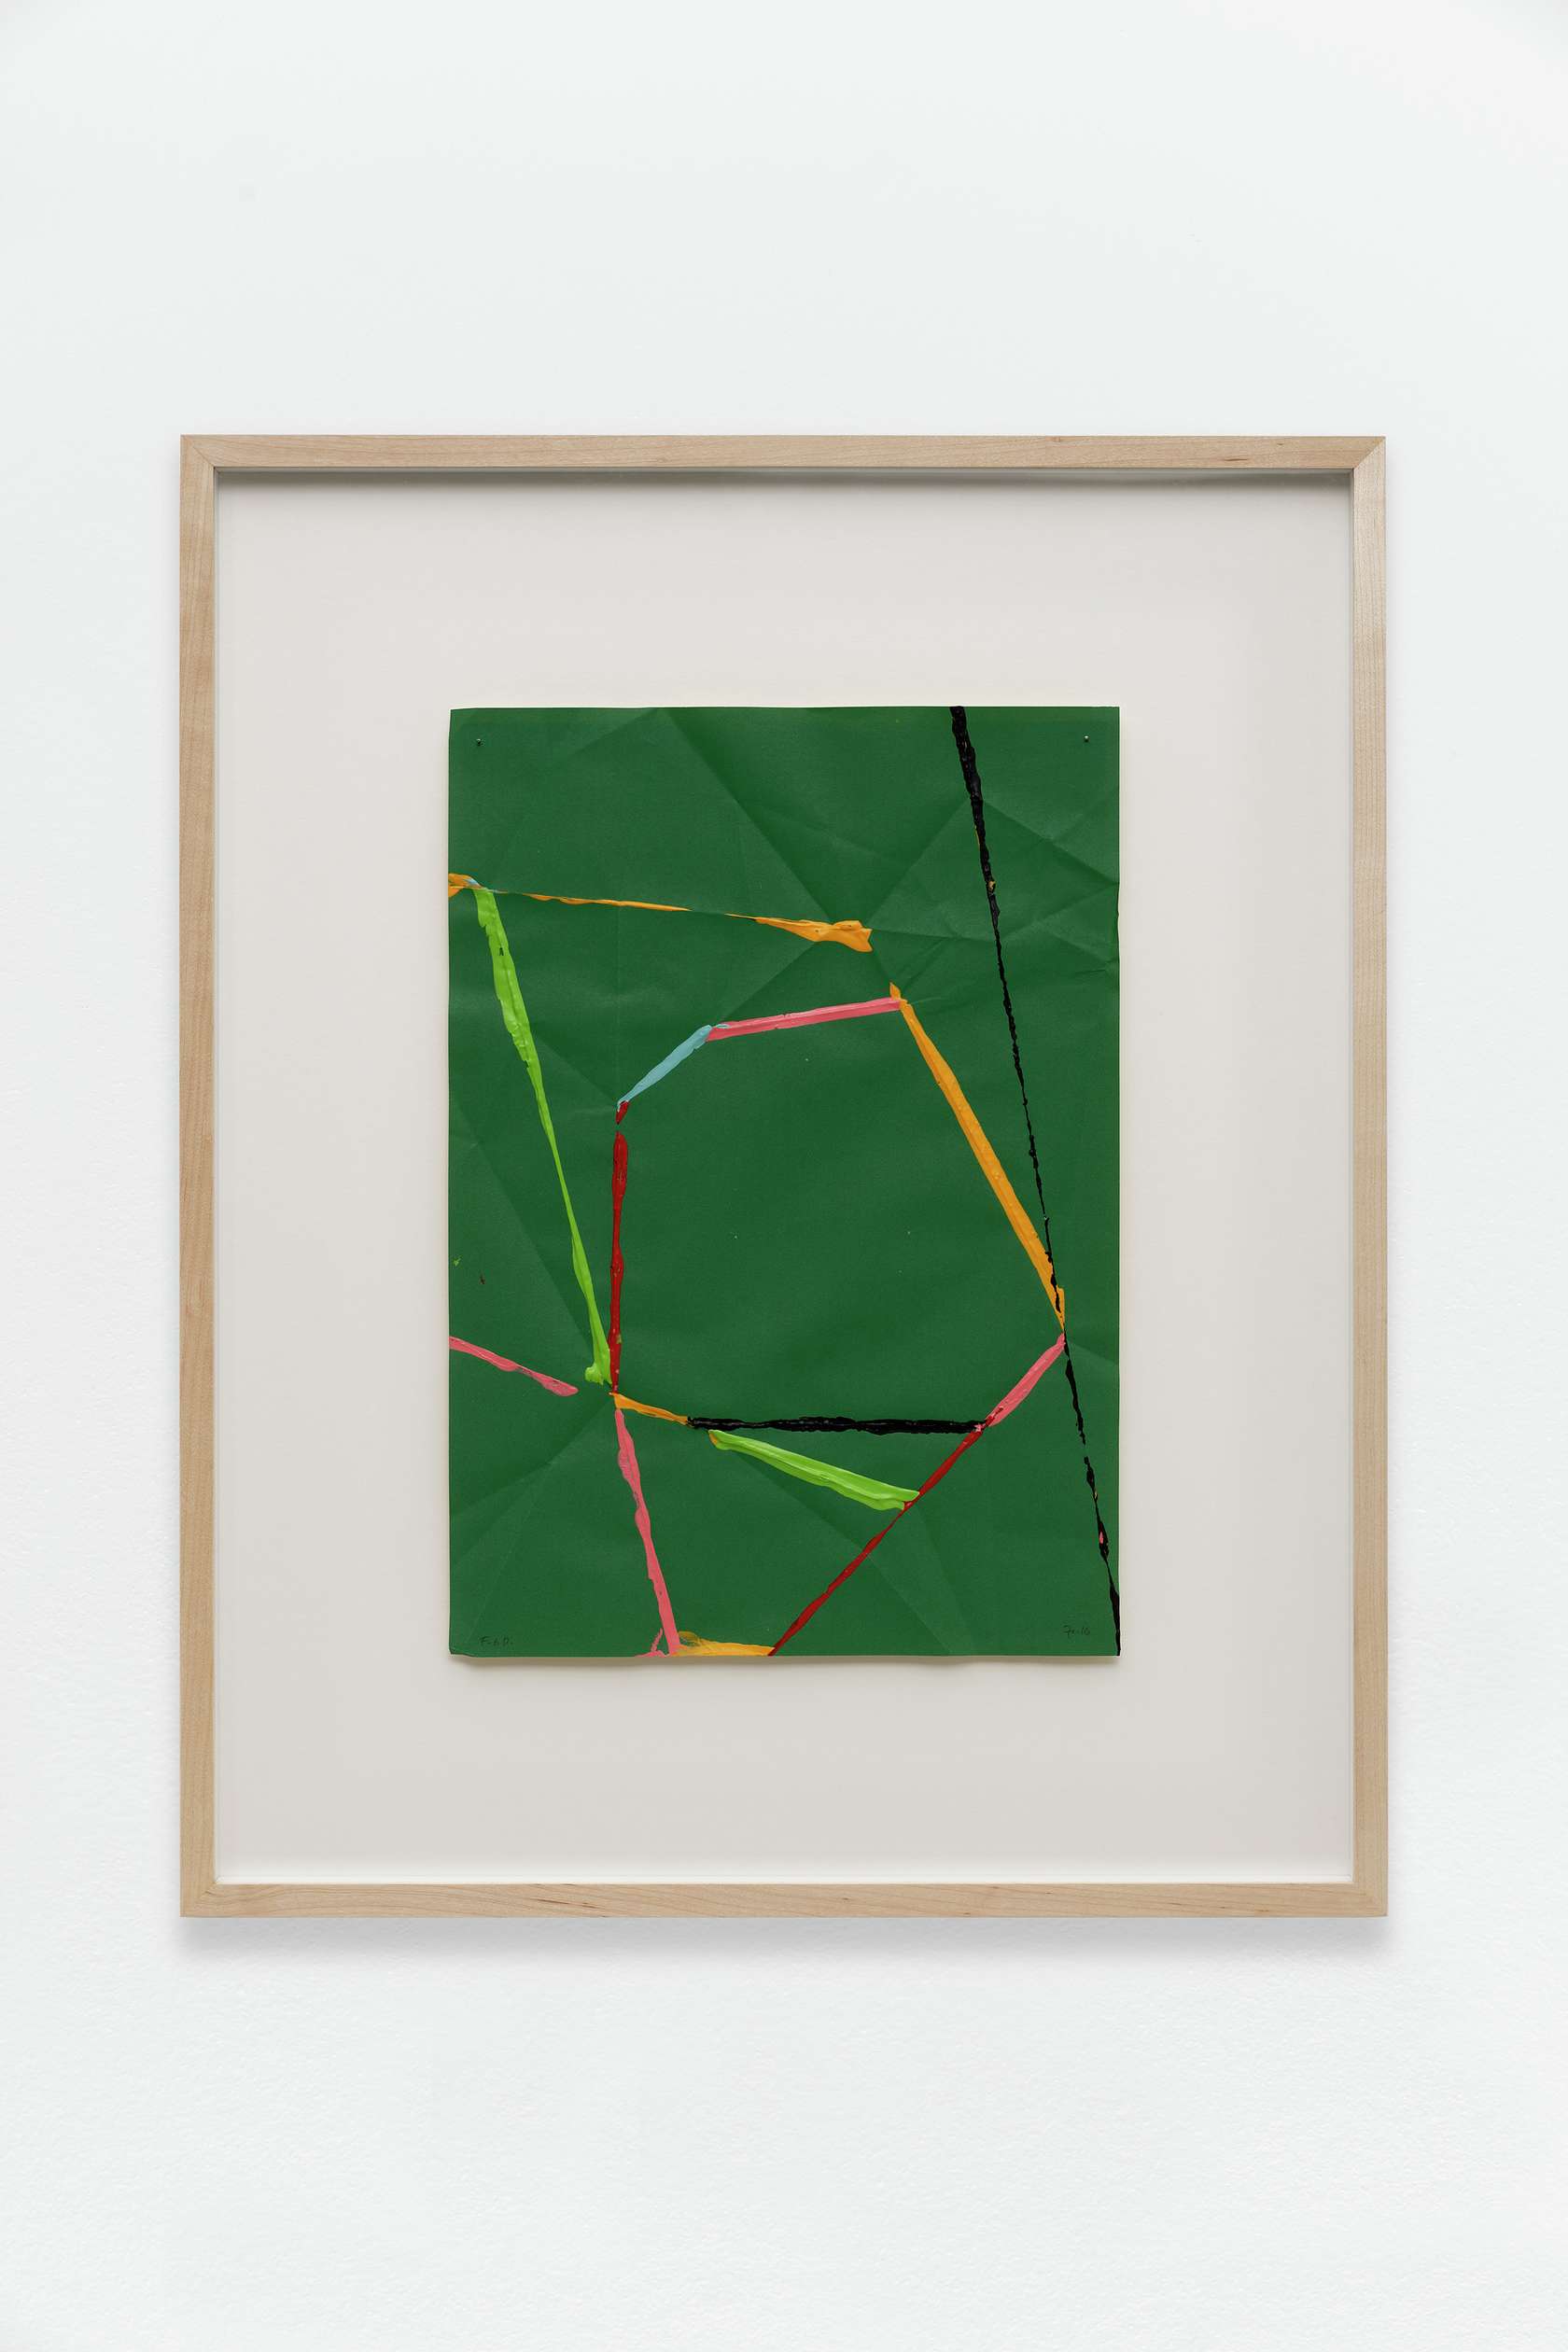 Beat Zoderer, Fold & Dip, 2016 Acrylique sur papier plié41 × 29 cm / 16 1/8 × 11 3/8 in.